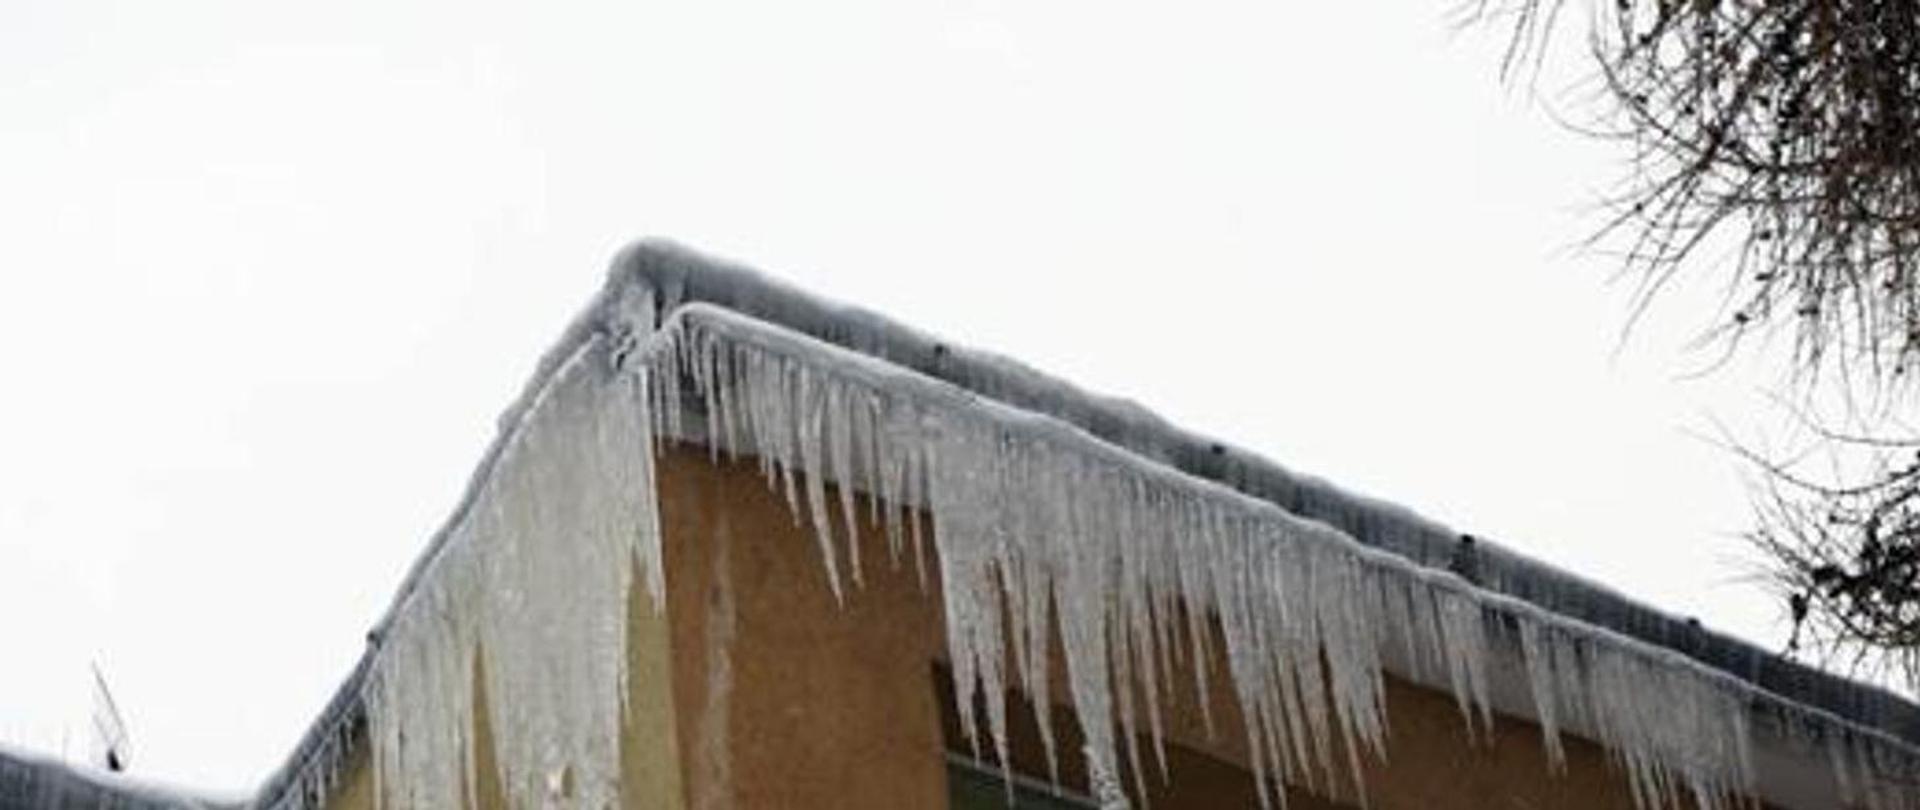 Zdjęcie przedstawia bardzo dużą ilość sopli lodu zwisających z budynku